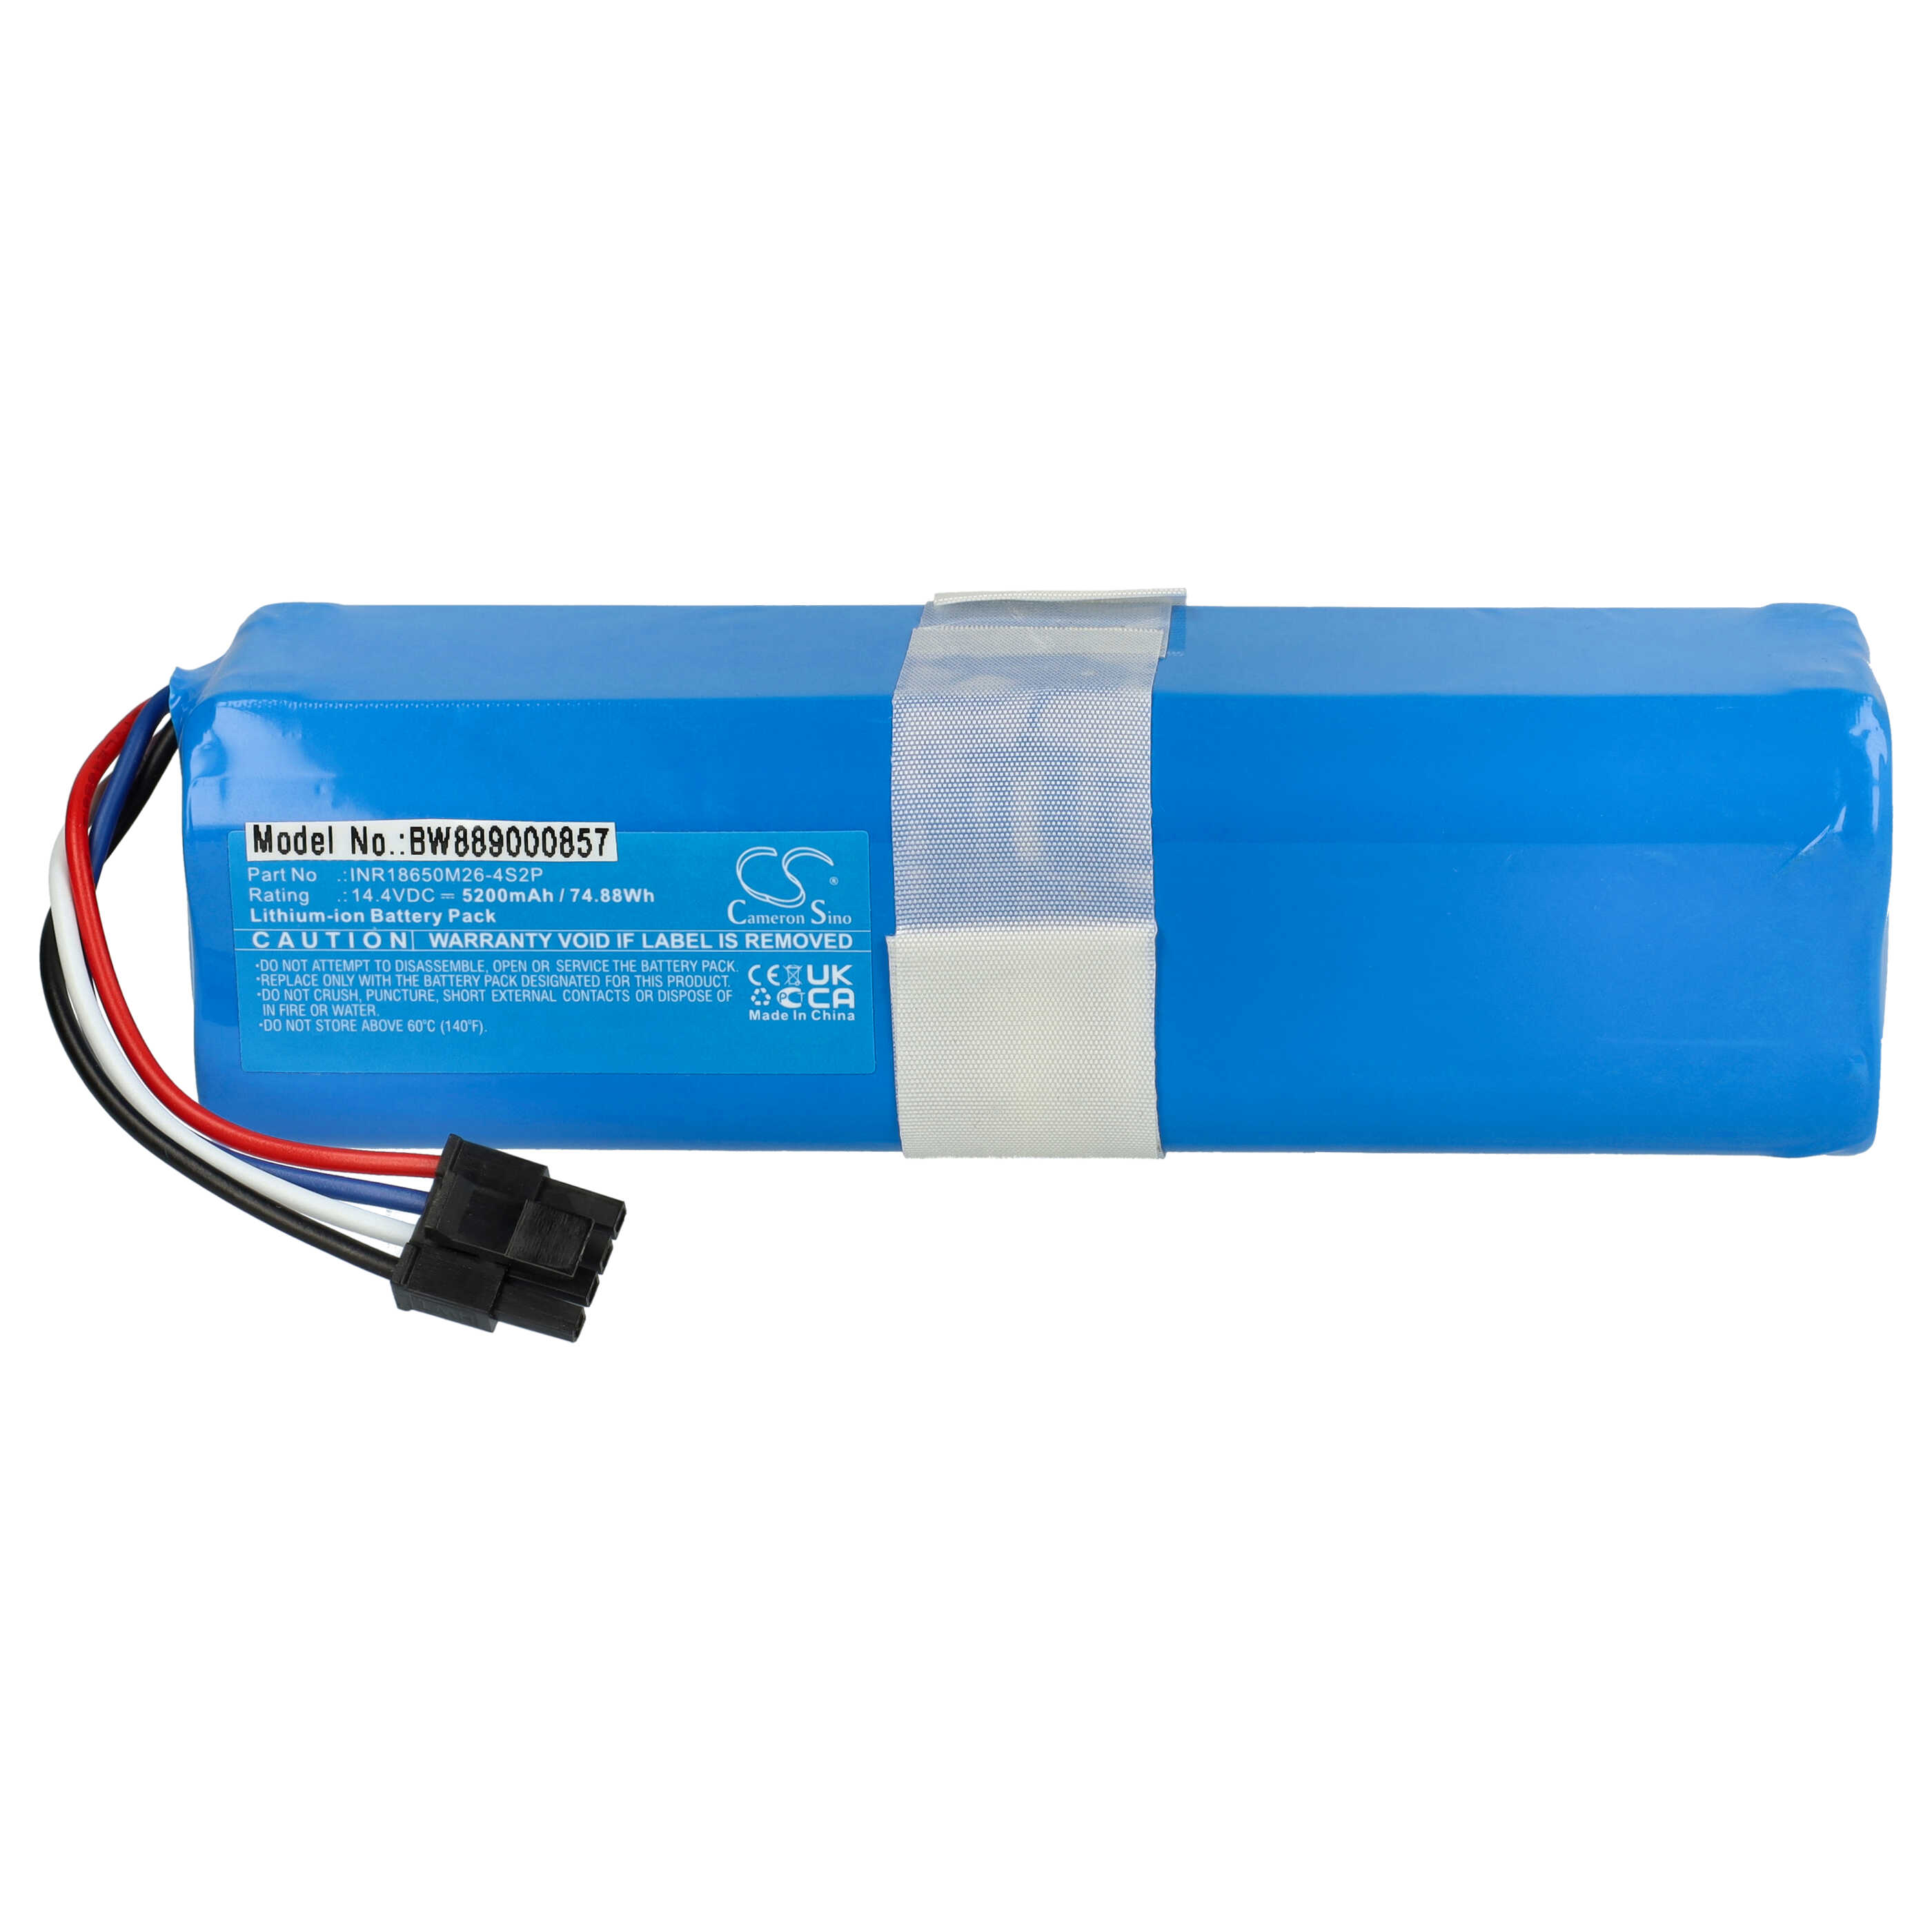 Batteria sostituisce 360 INR18650 M26-4S2P, D080-4S2P per aspirapolvere 360 - 5200mAh 14,4V Li-Ion